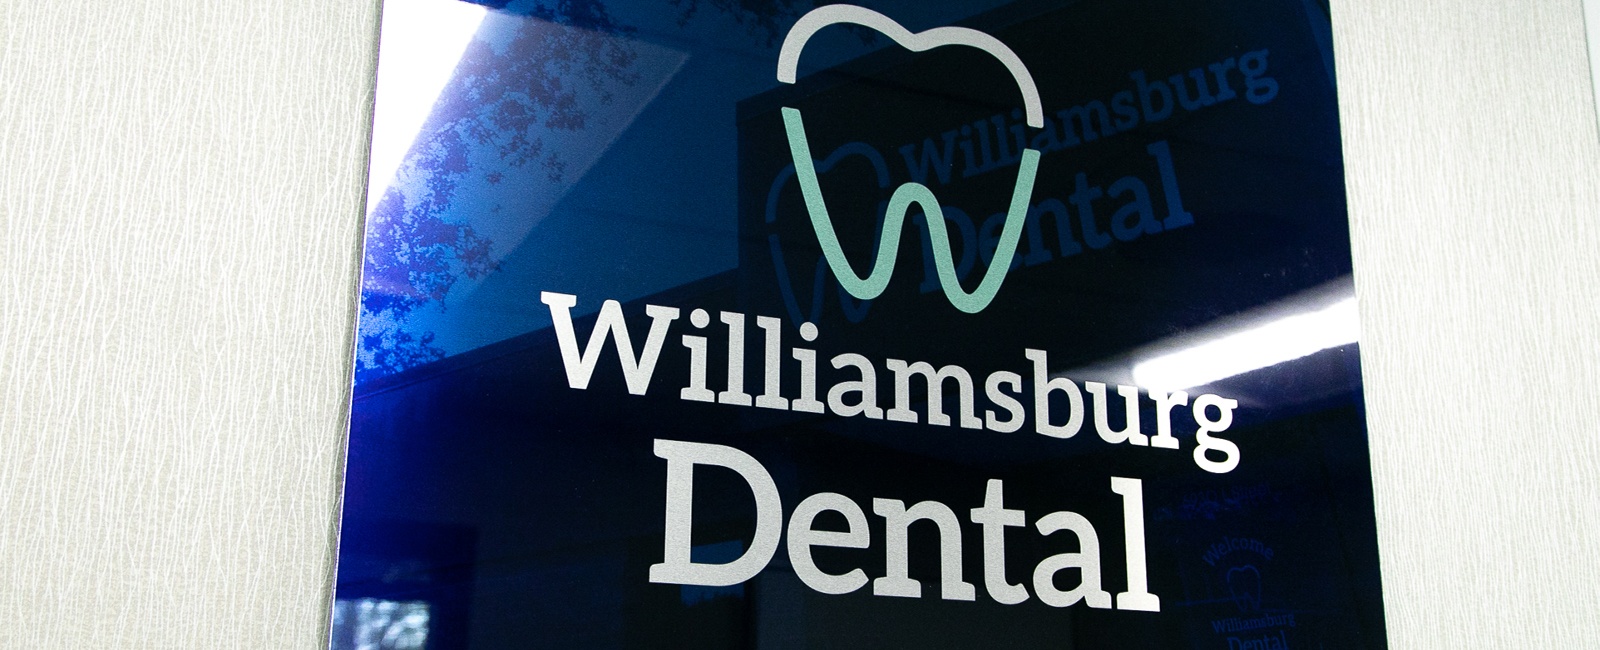 Williamsburg Dental logo sign on dental office wall